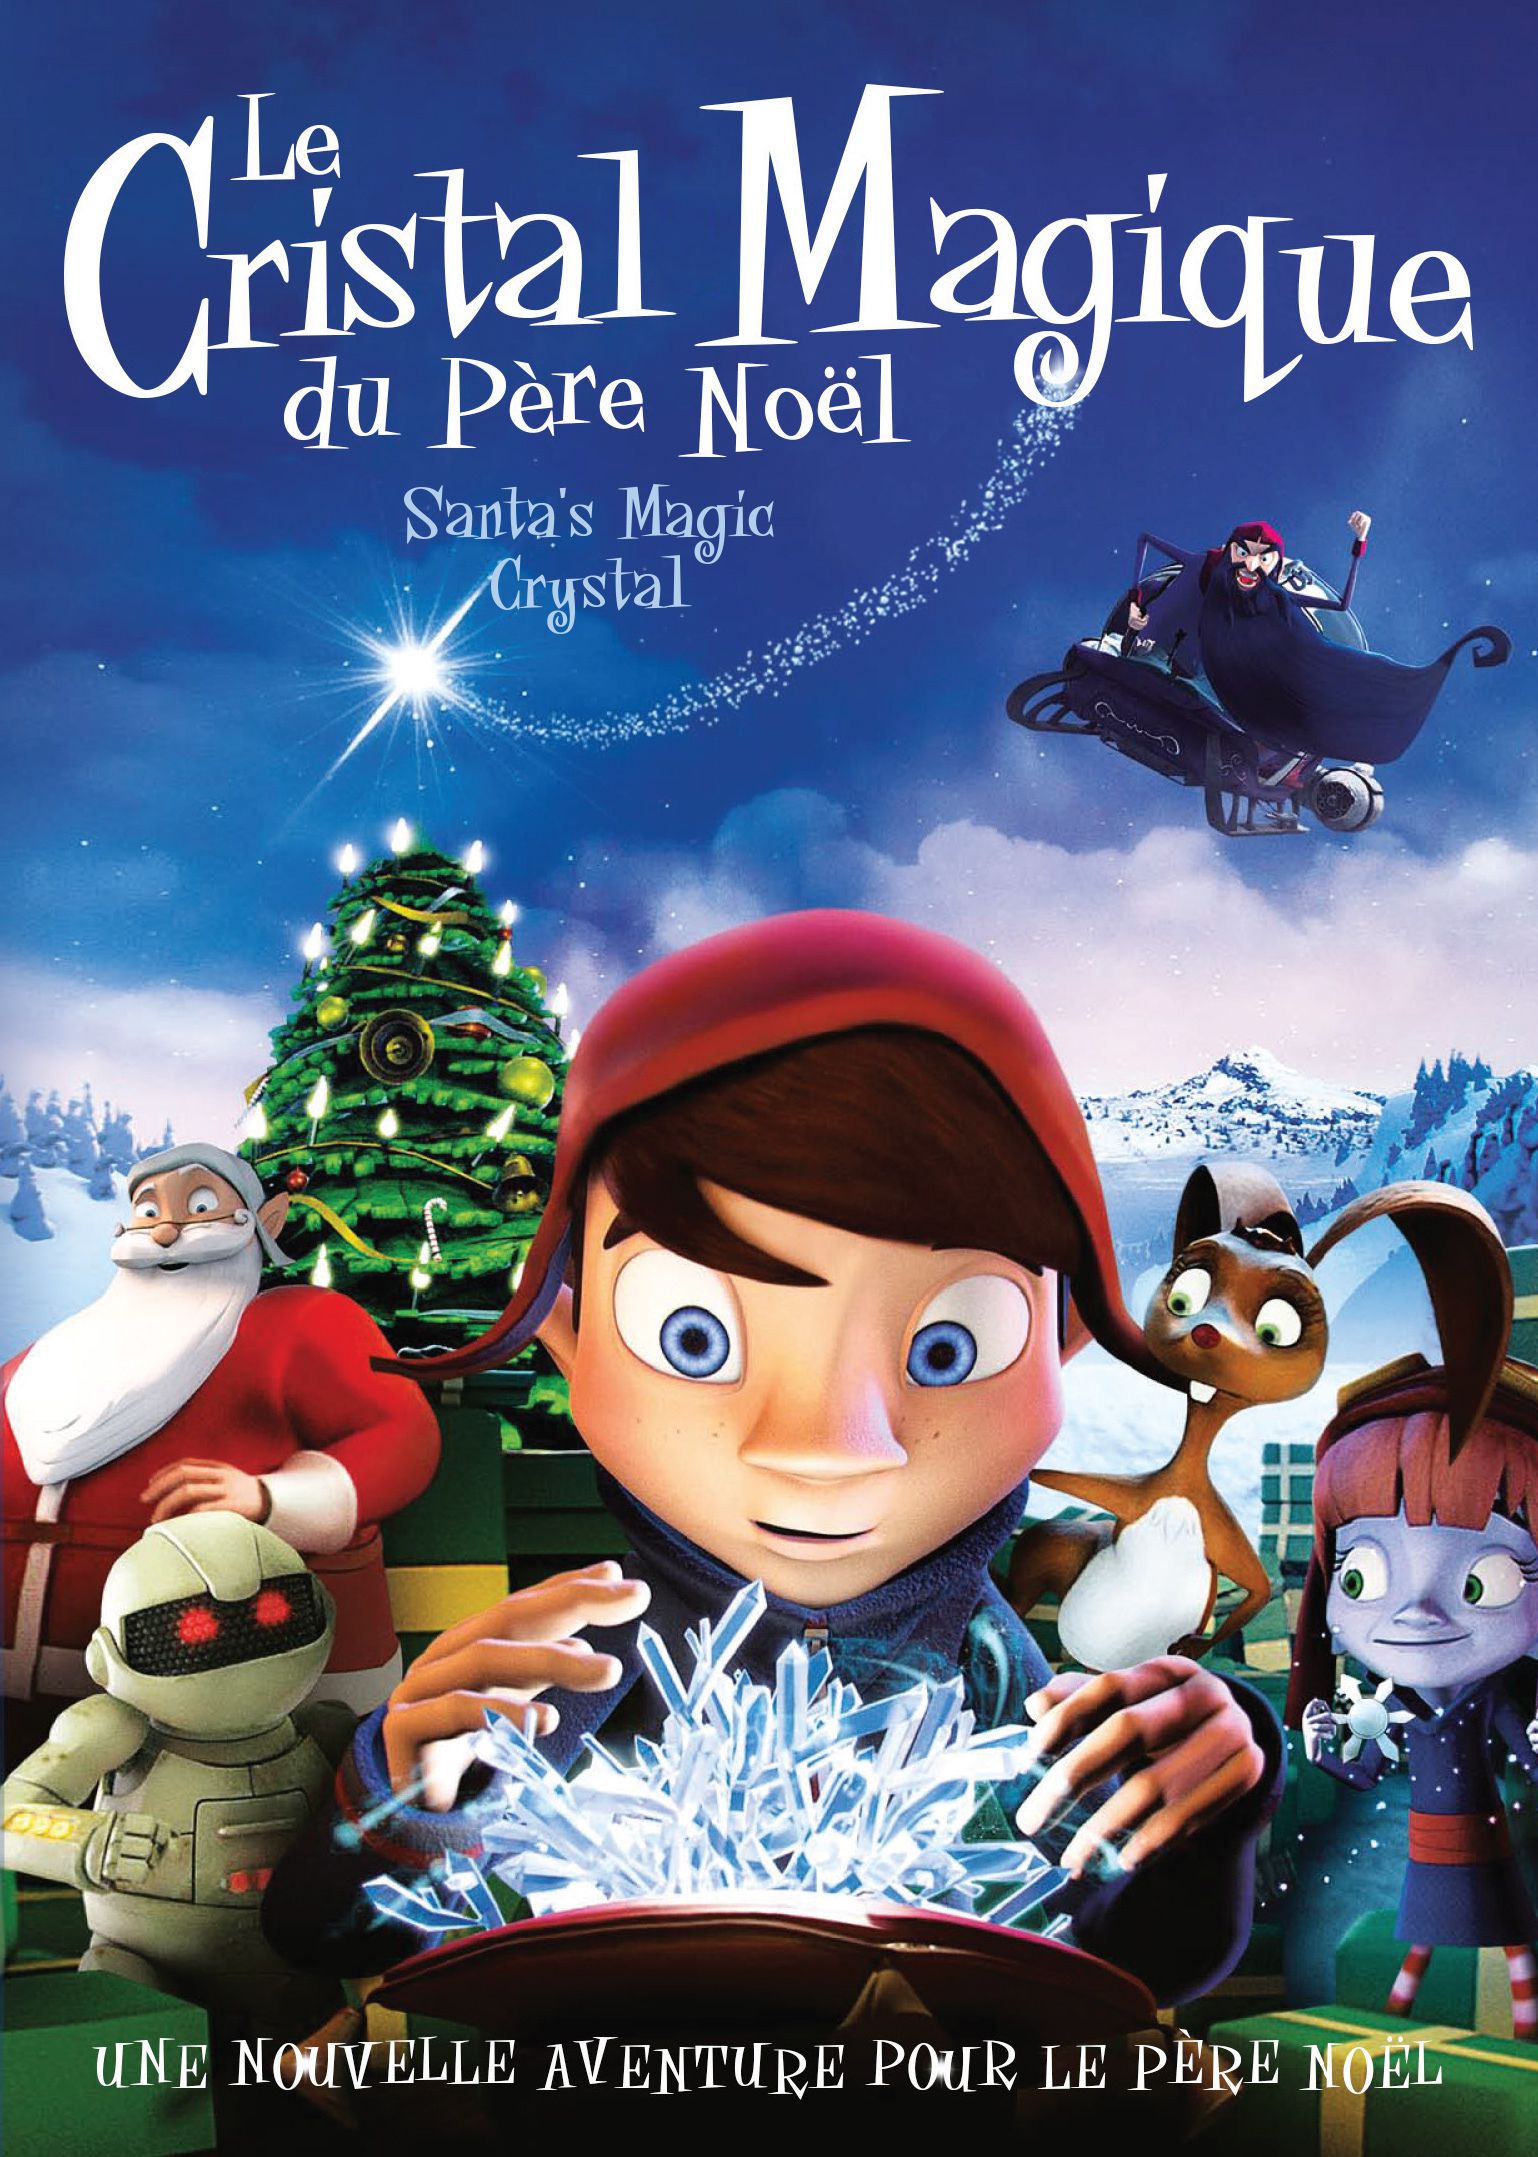 Le Cristal Magique du Père Noël - Film (2011) streaming VF gratuit complet